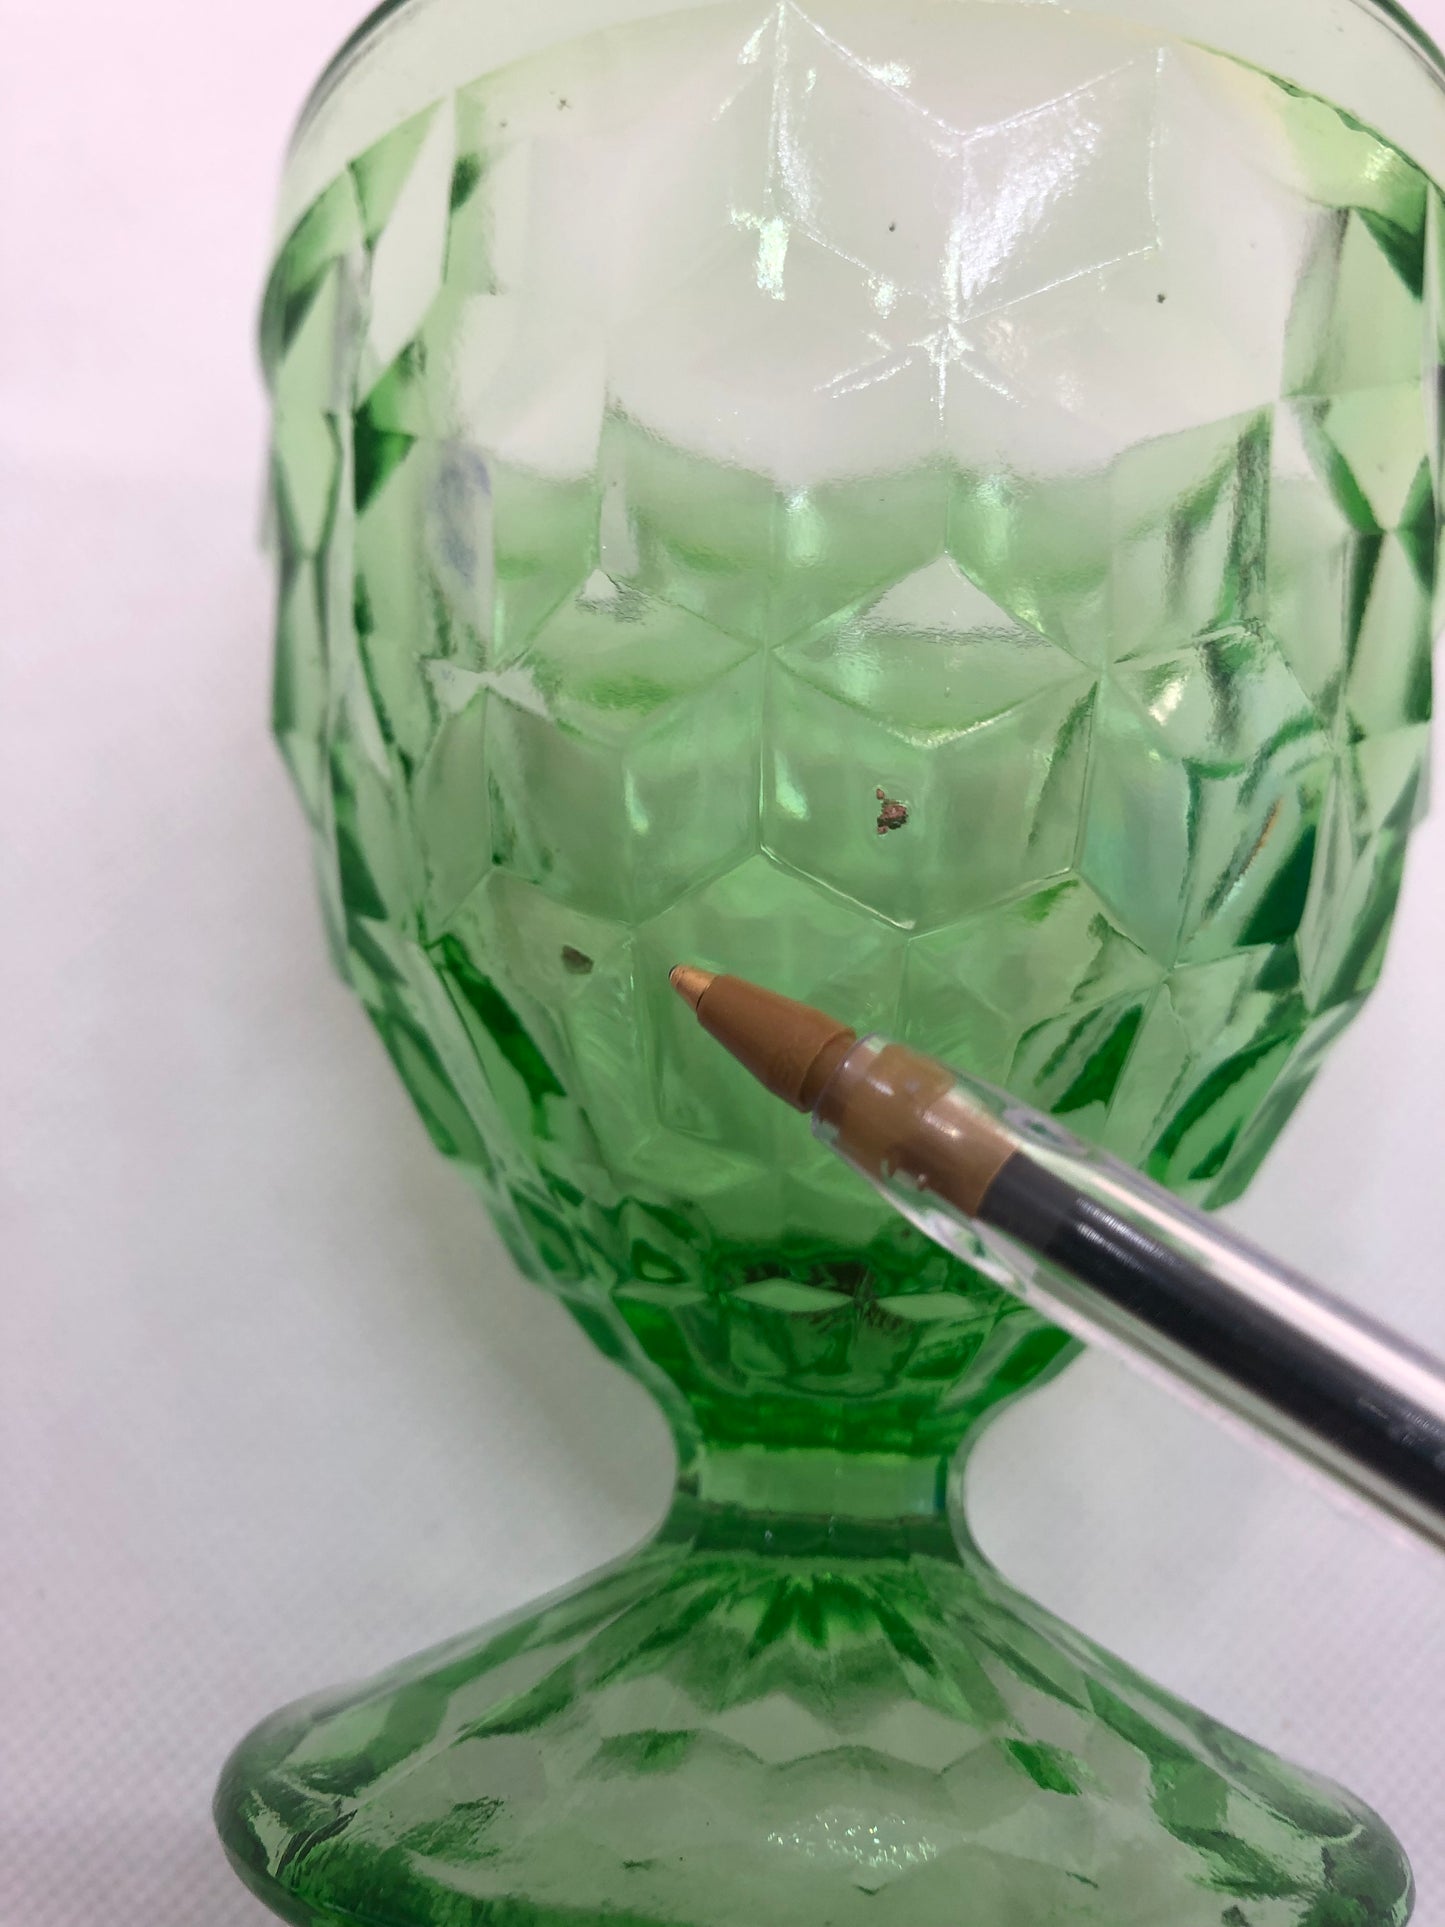 Uranium Green Glass Dessert Bowl